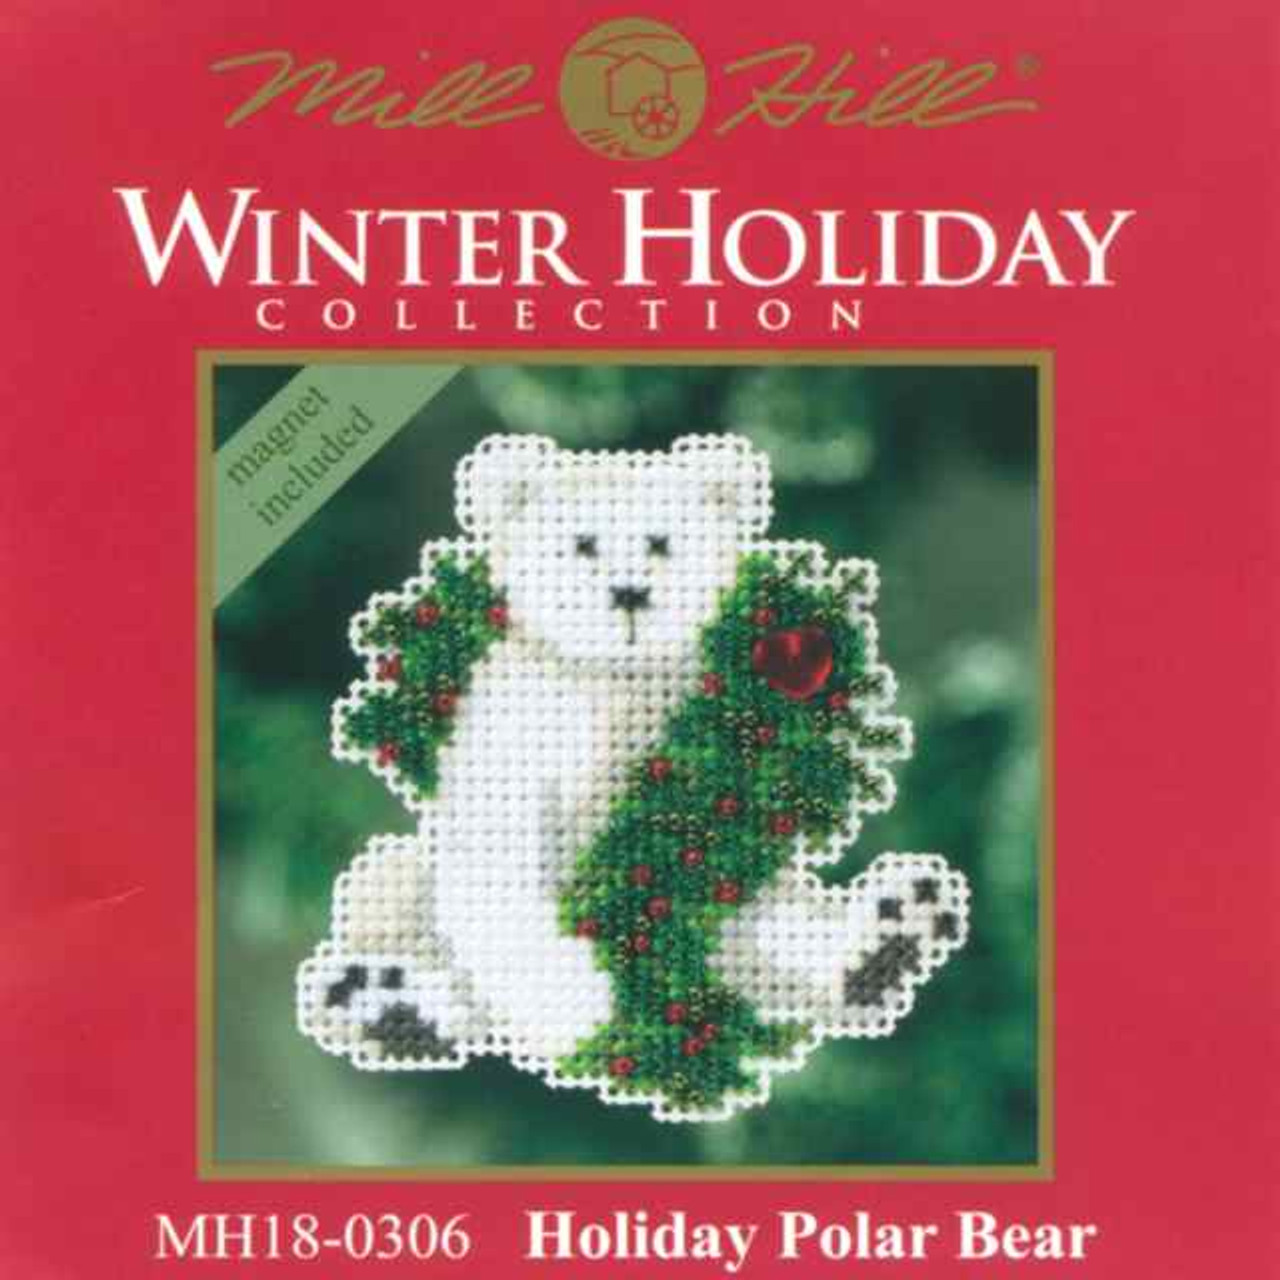 Holiday Polar Bear Beaded Ornament Kit Mill Hill 2010 Winter Holiday